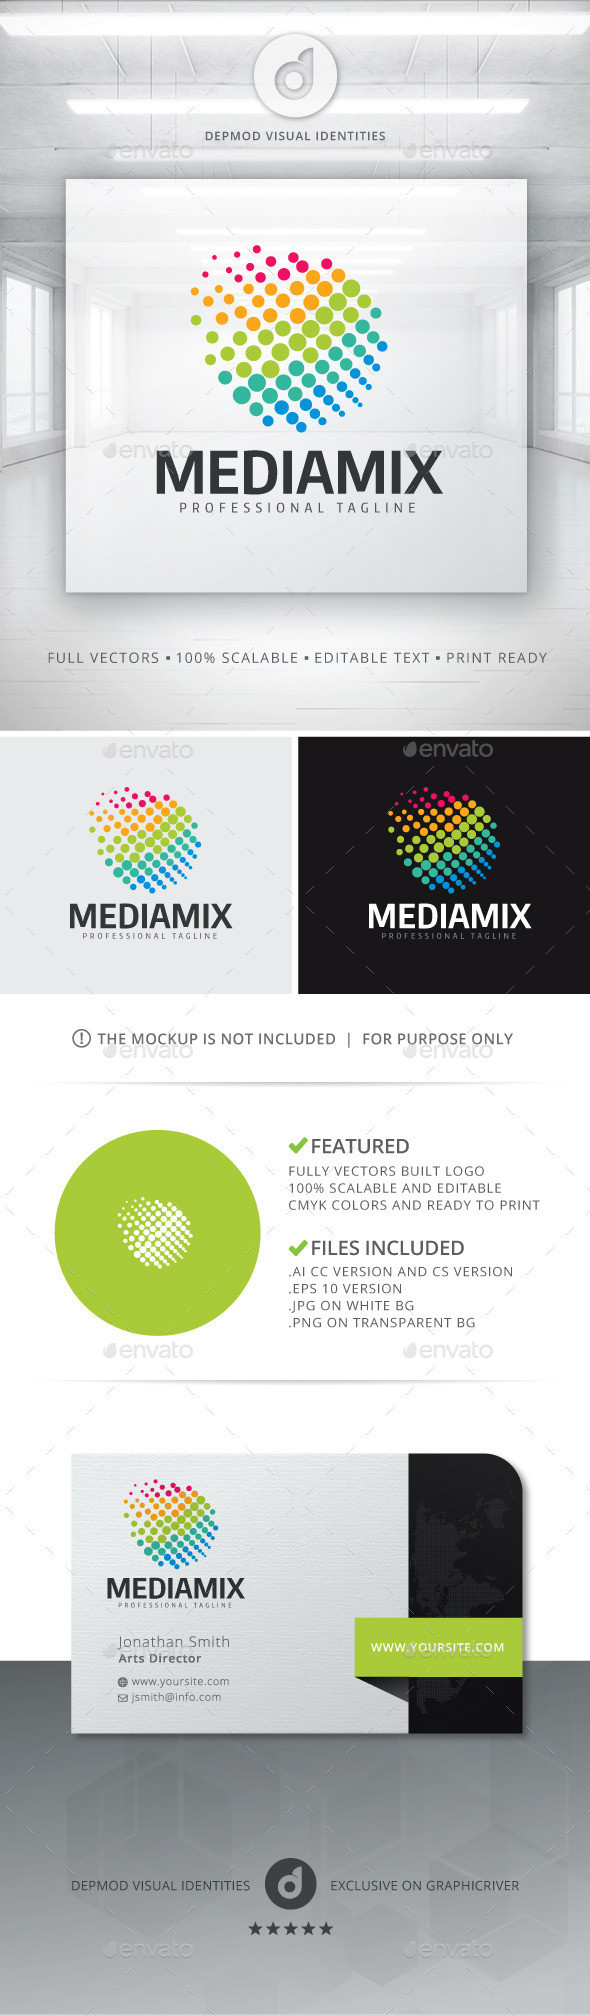 Mediamix logo